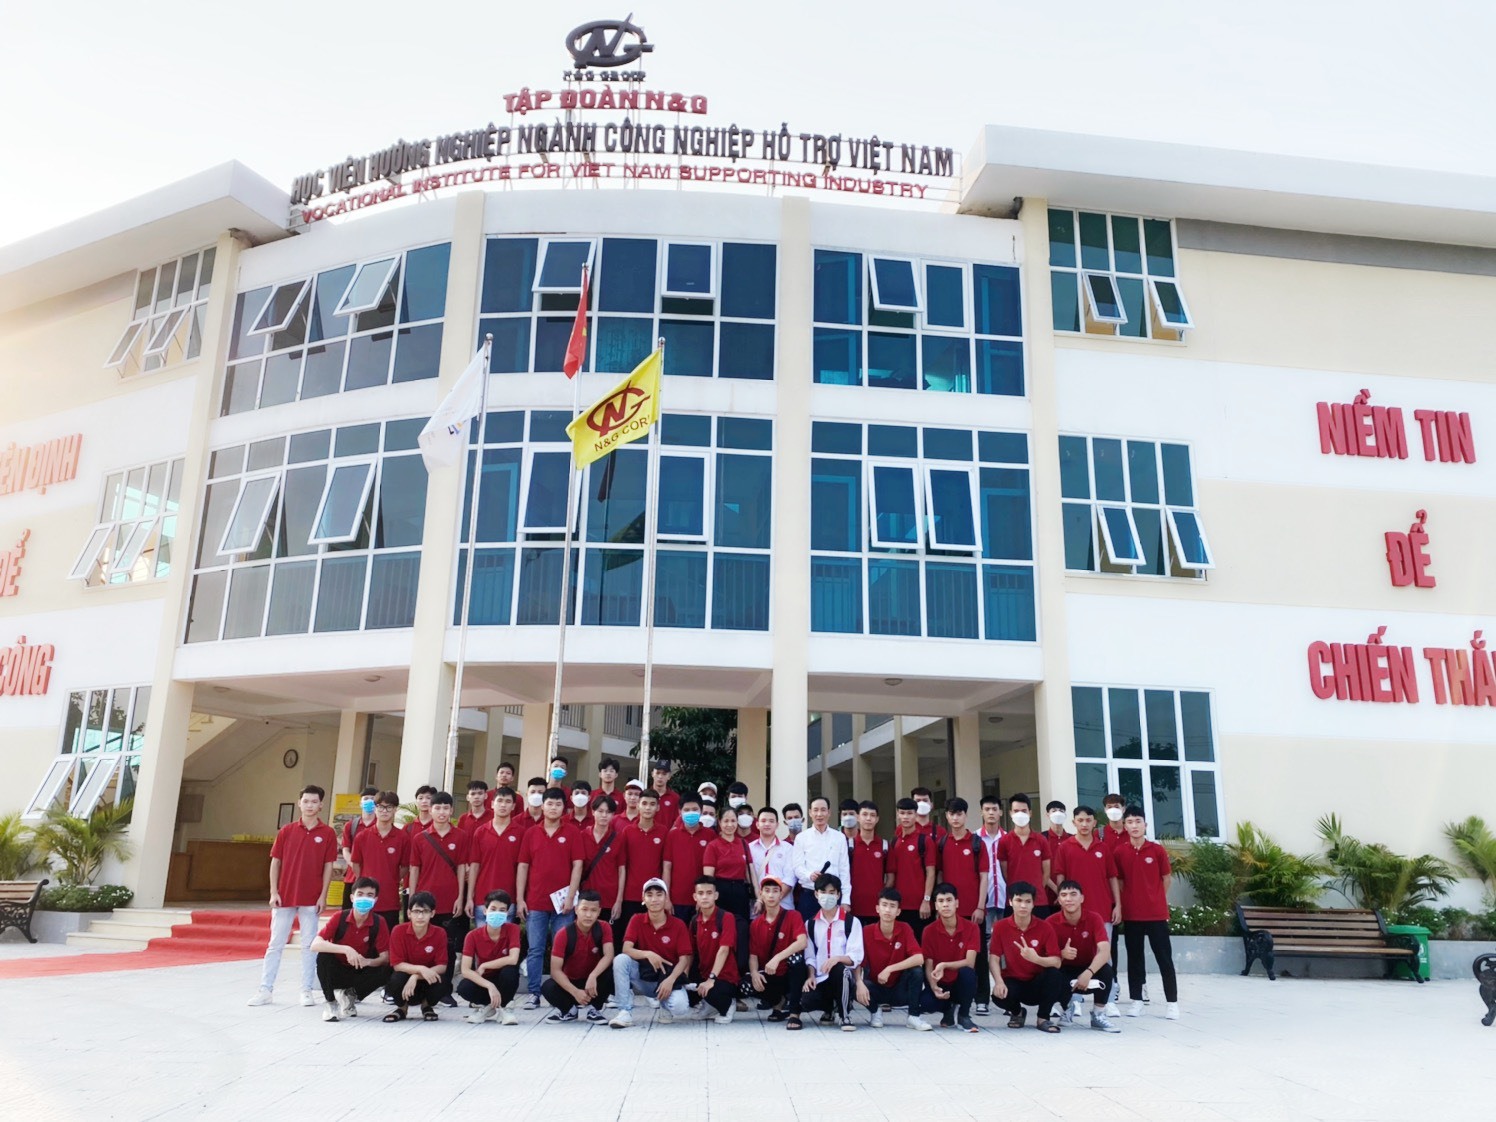 Các học viên của Học viện hướng nghiệp ngành công nghiệp hỗ trợ Việt Nam tại Khu công nghiệp hỗ trợ Nam Hà Nội (Hanssip)